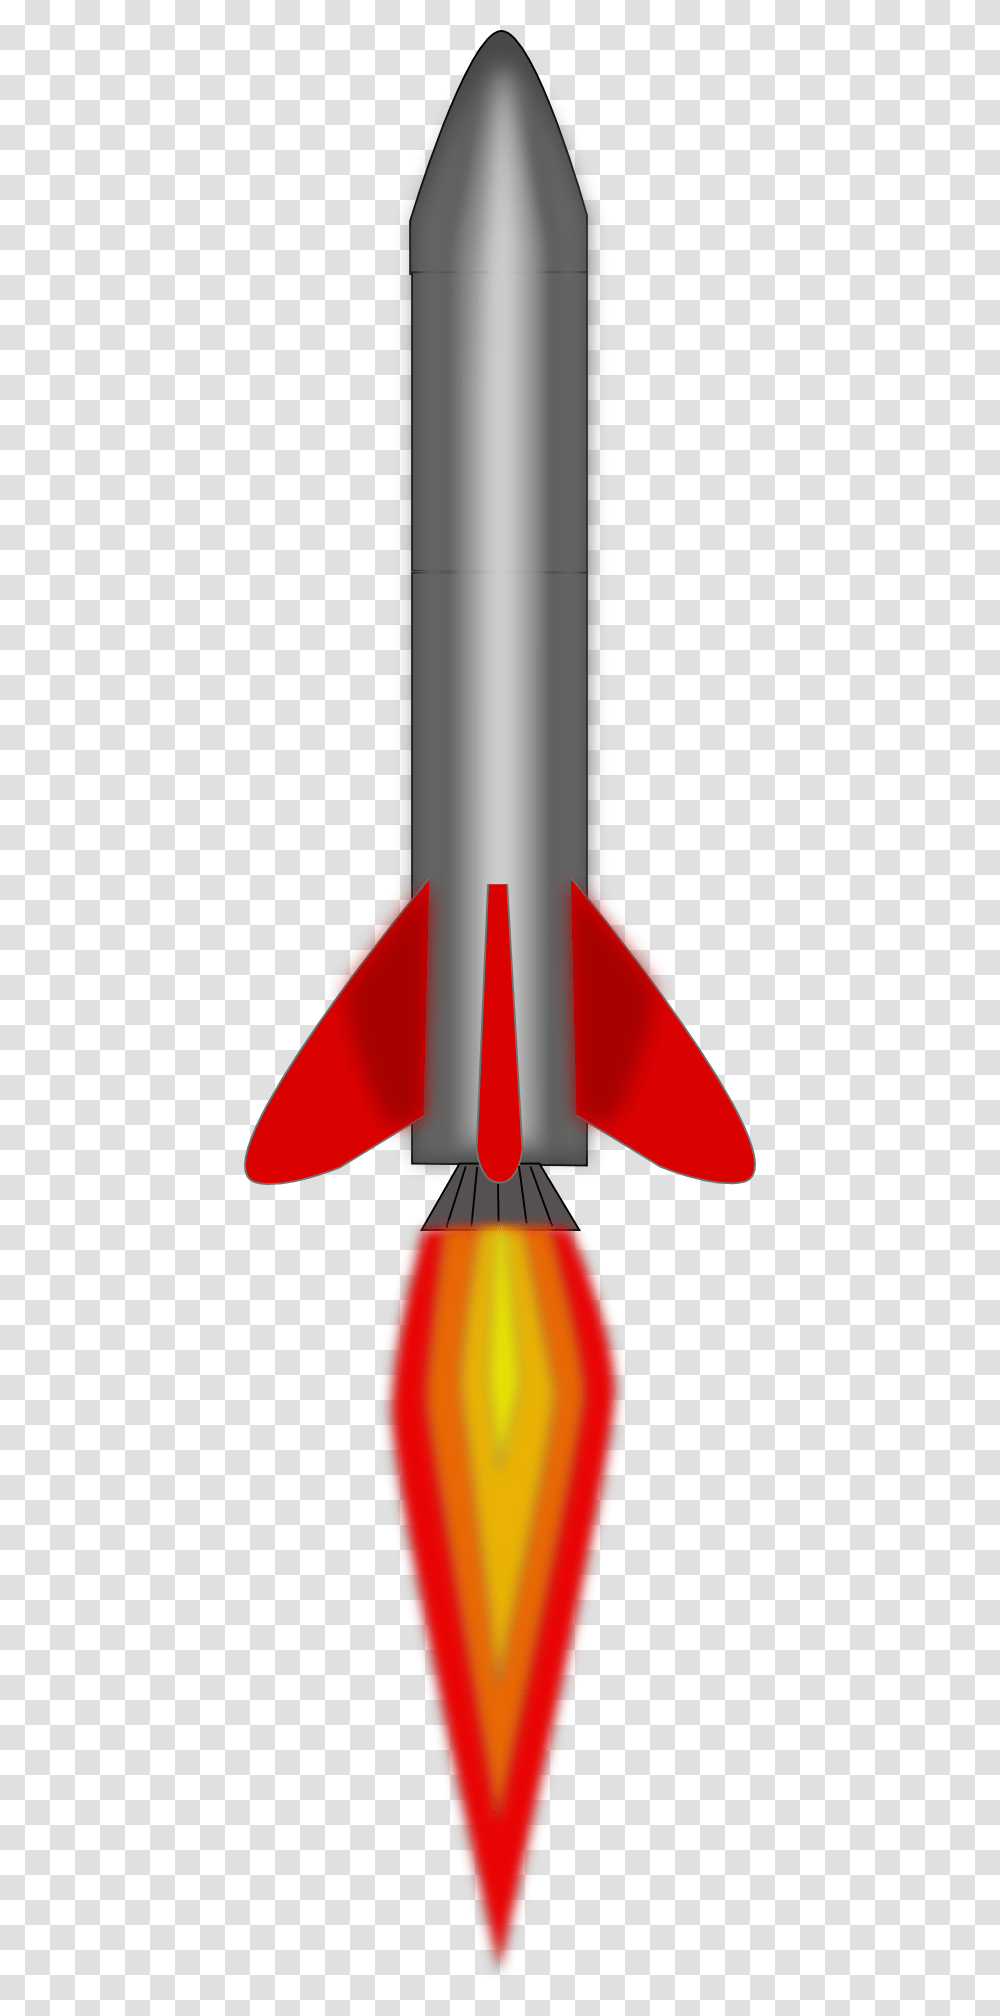 Free Rocket Images, Vehicle, Transportation, Missile Transparent Png